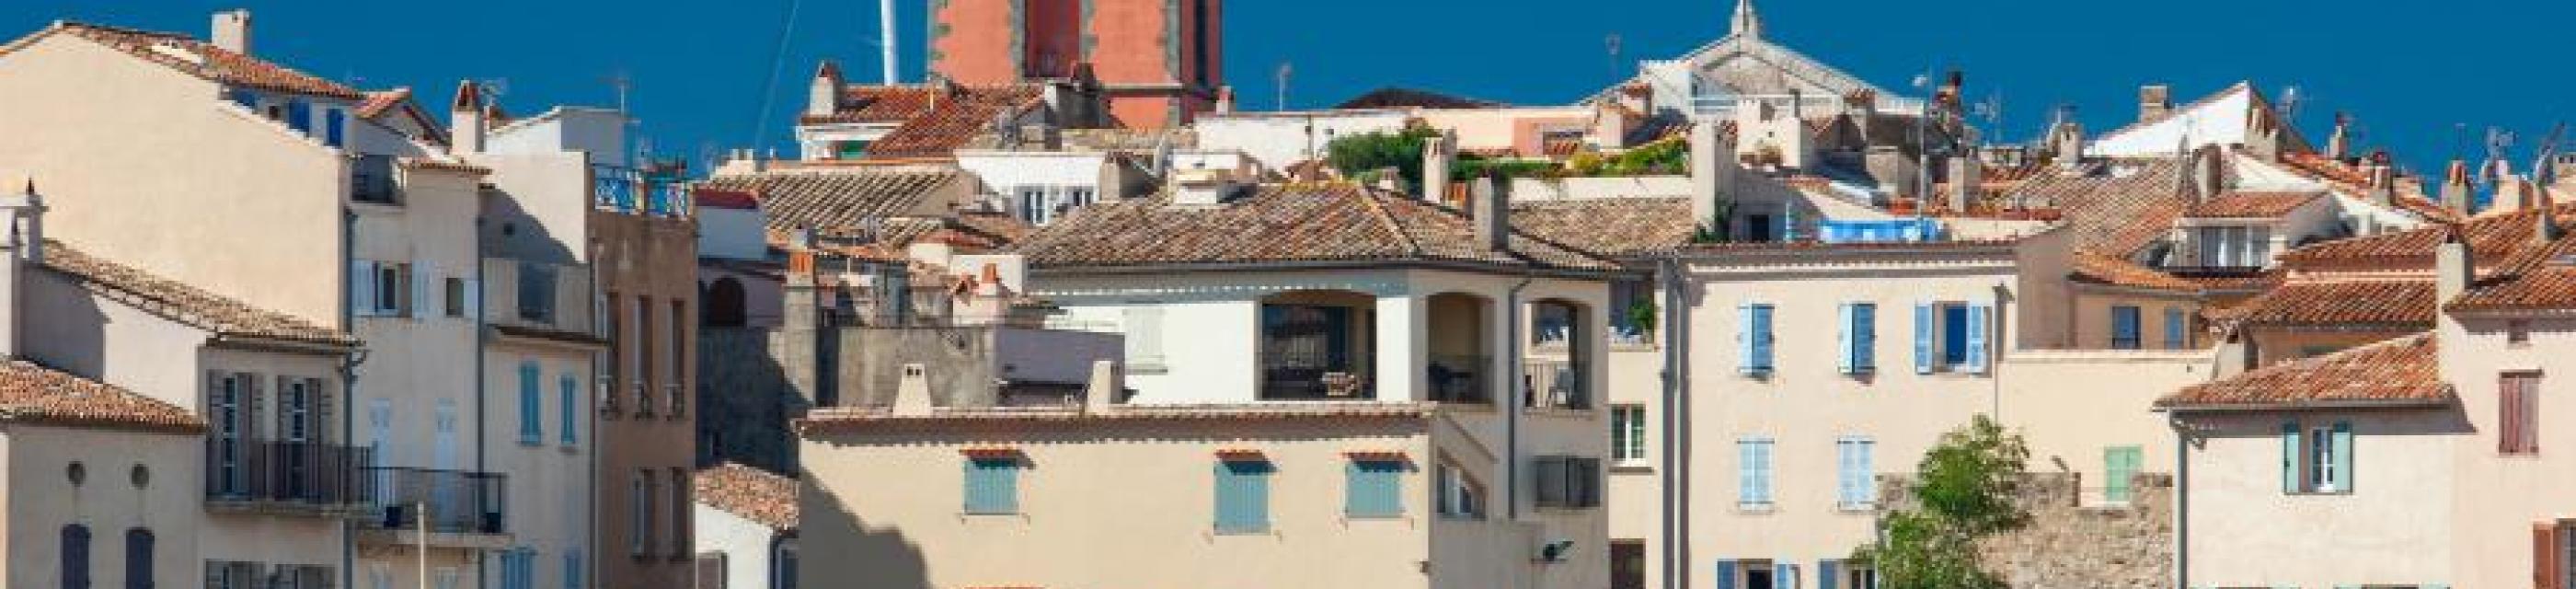 Histoire de la ville de Saint Tropez et de son riche patrimoine